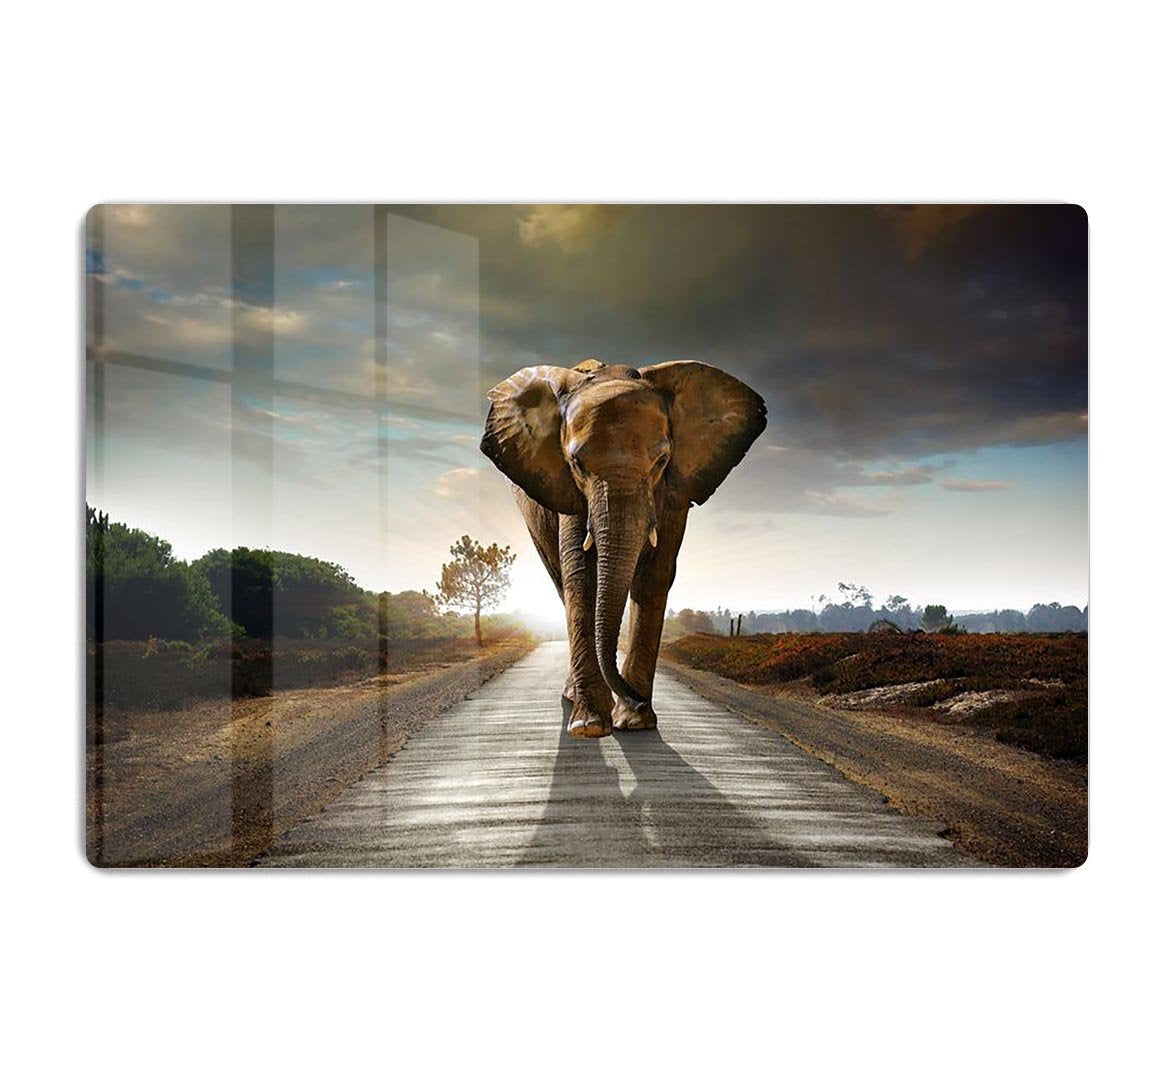 Single elephant walking in a road HD Metal Print - Canvas Art Rocks - 1